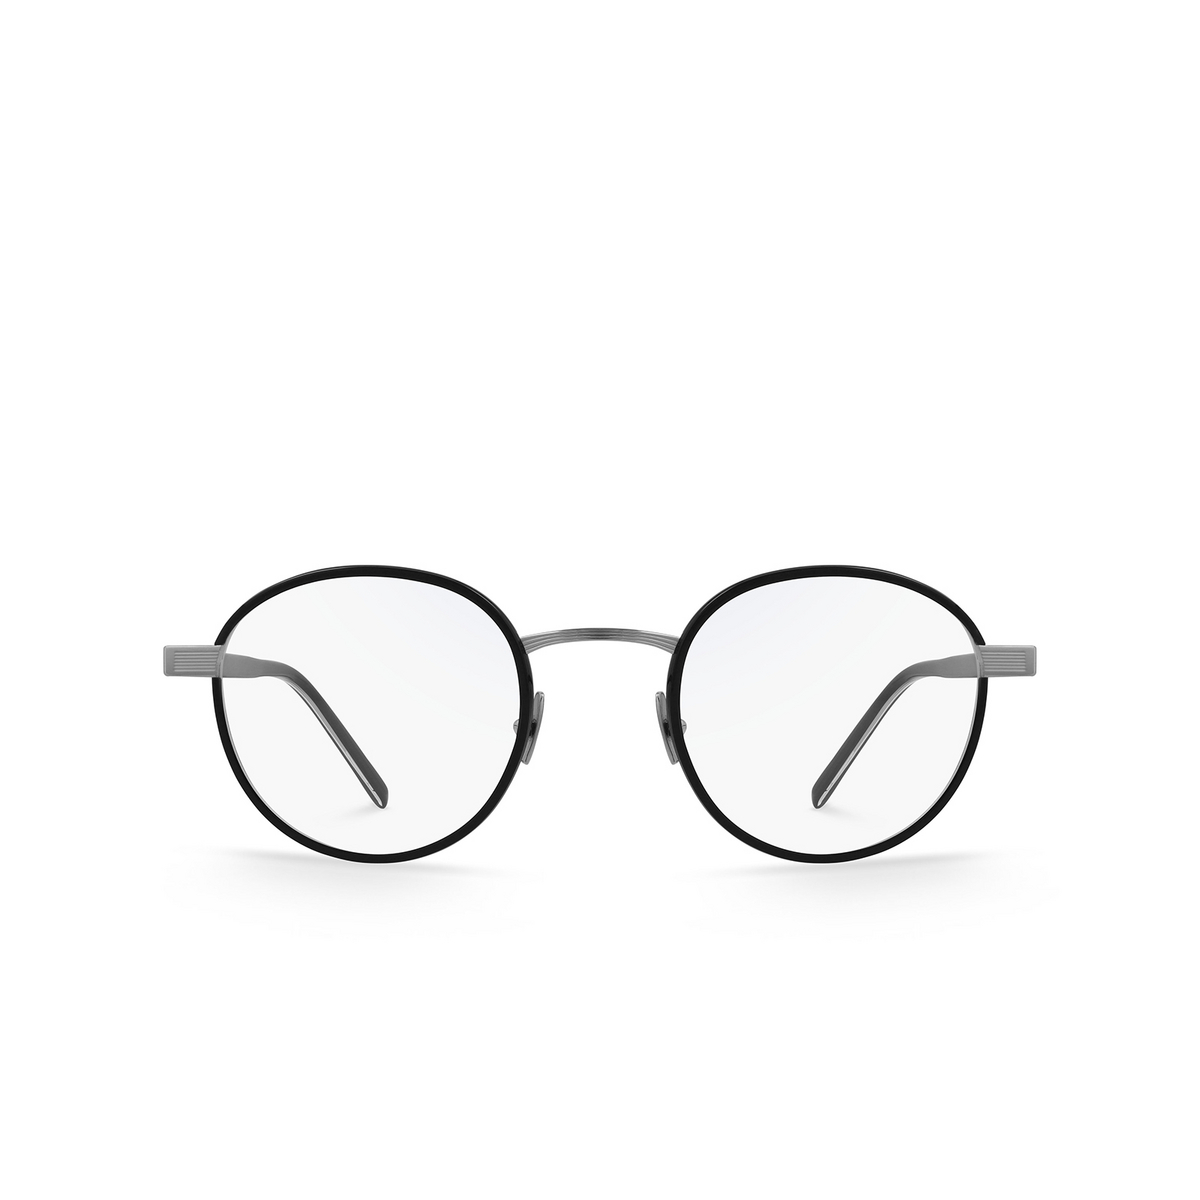 Saint Laurent® Round Eyeglasses: SL 125 color Black 001 - front view.